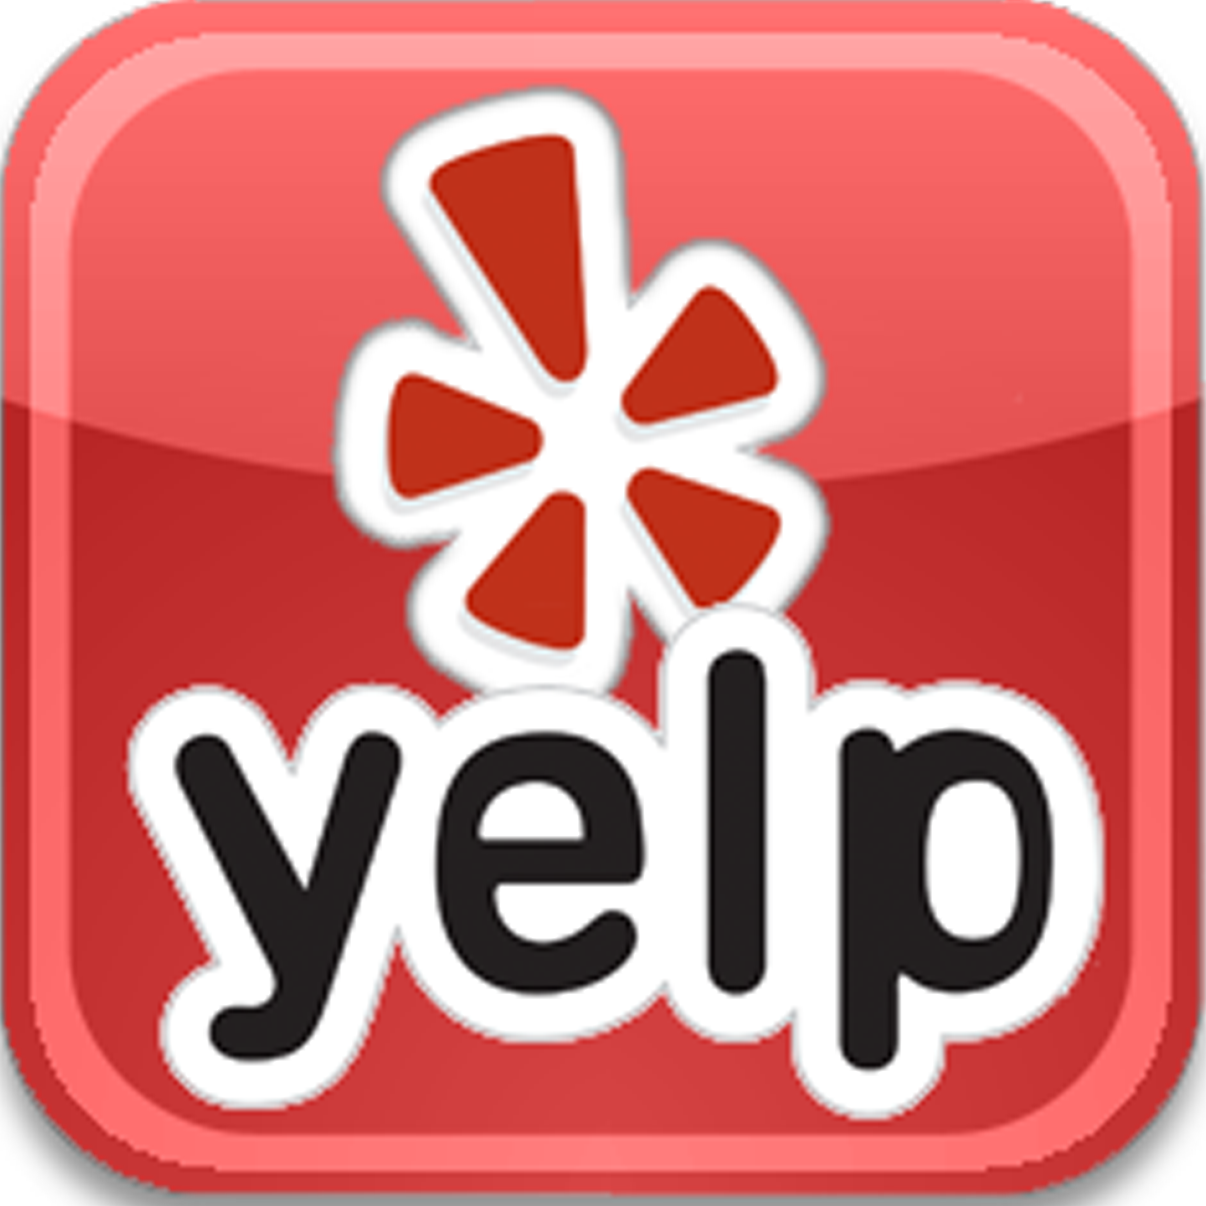 yelp-logo-17